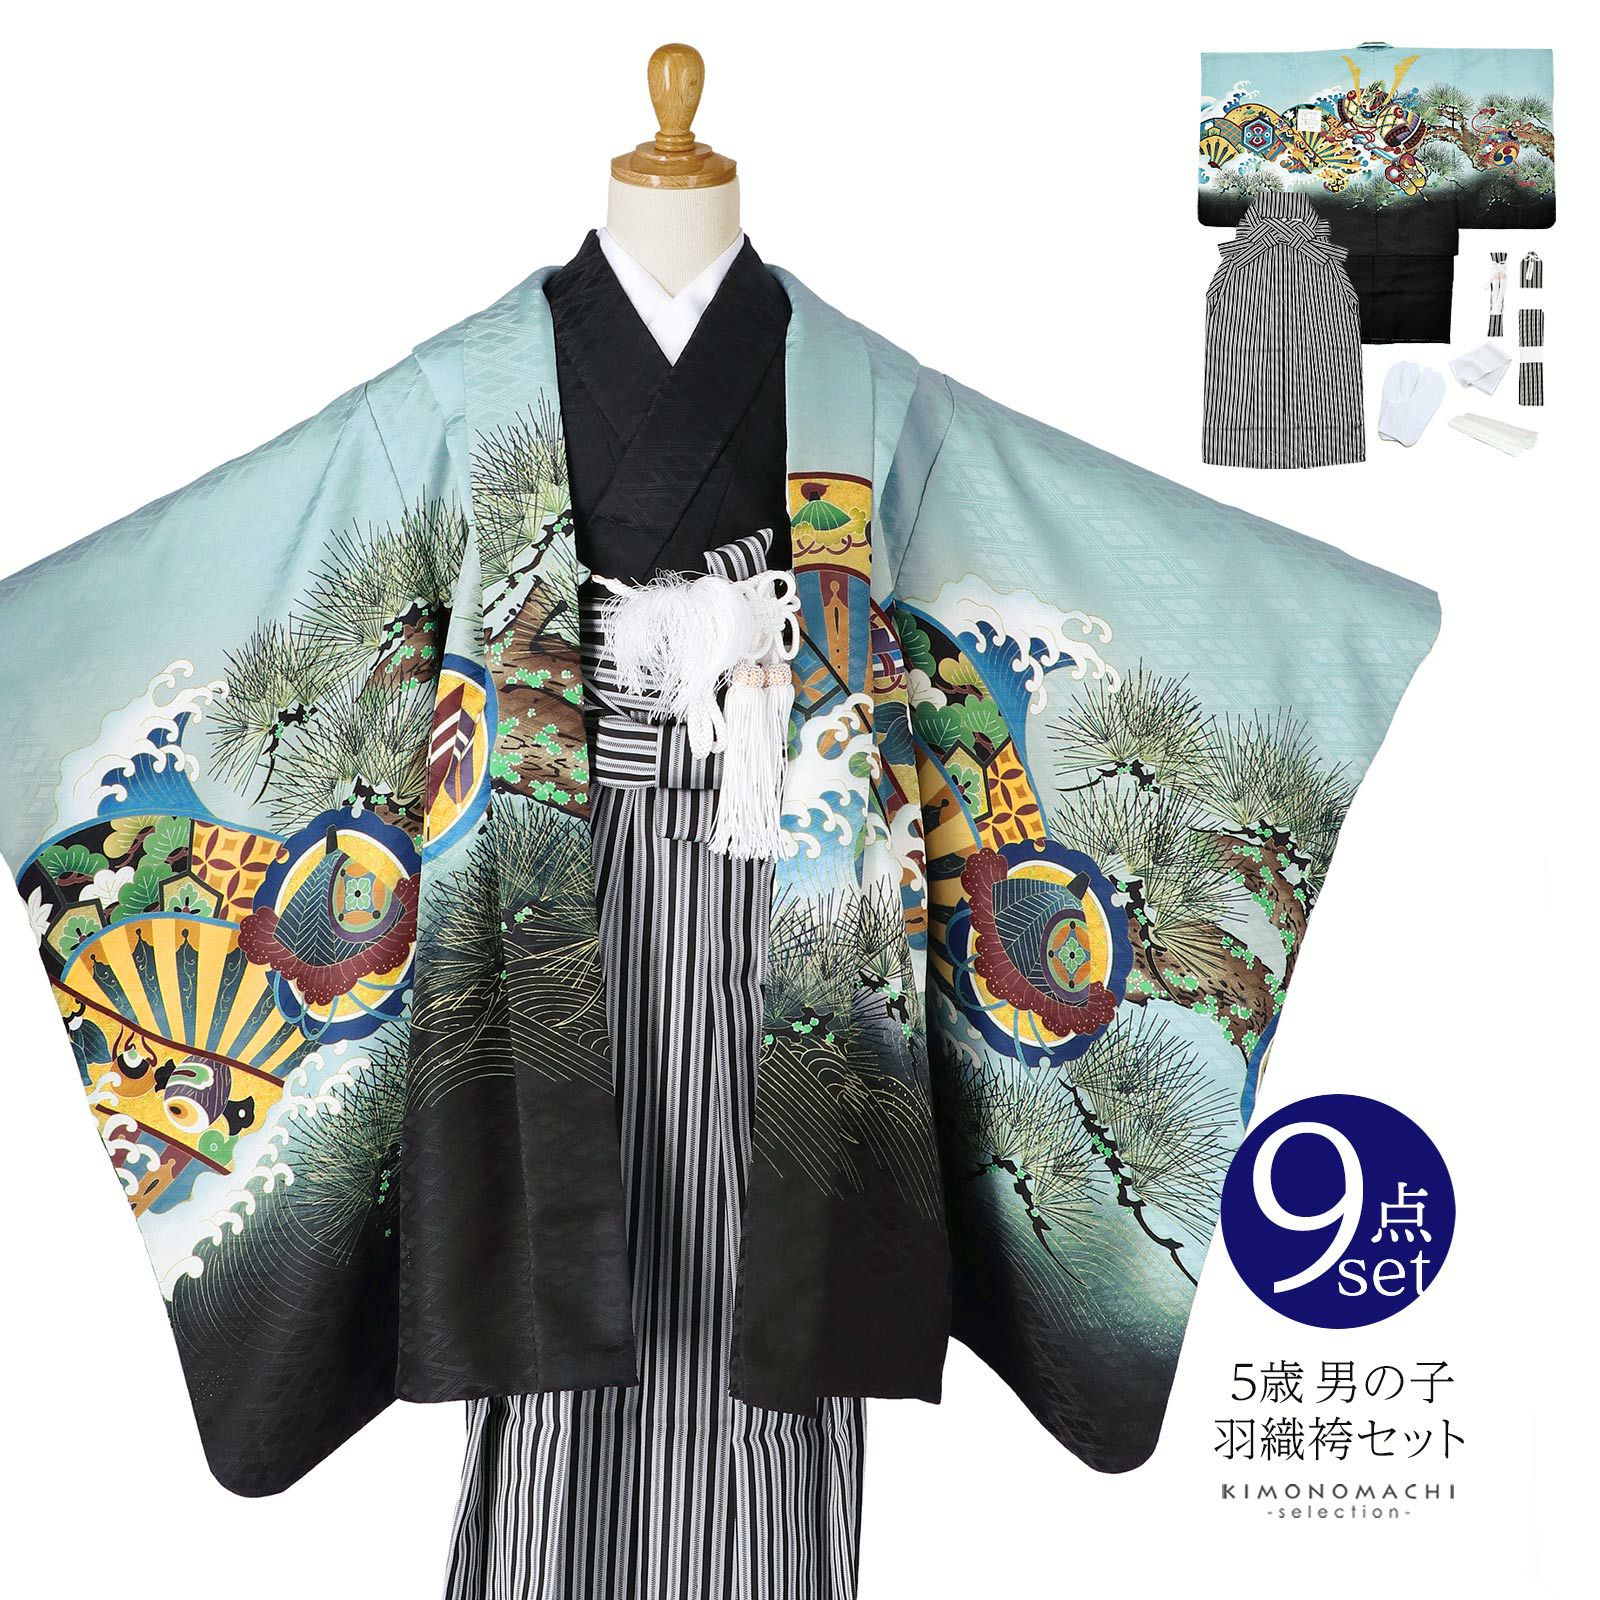 7周年記念イベントが 袴 男の子 着物 節句 和風袴 アイボリー×水色花柄 100